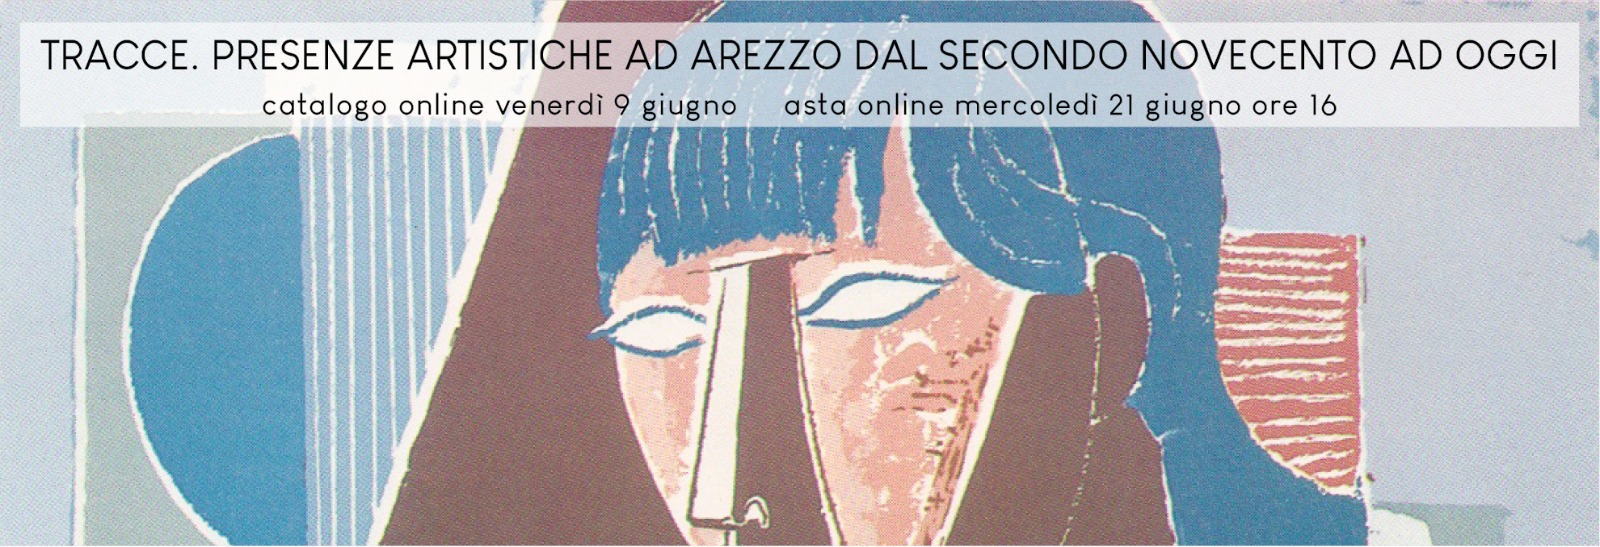 Tracce, Presenze artistiche ad Arezzo dal secondo Novecento ad oggi